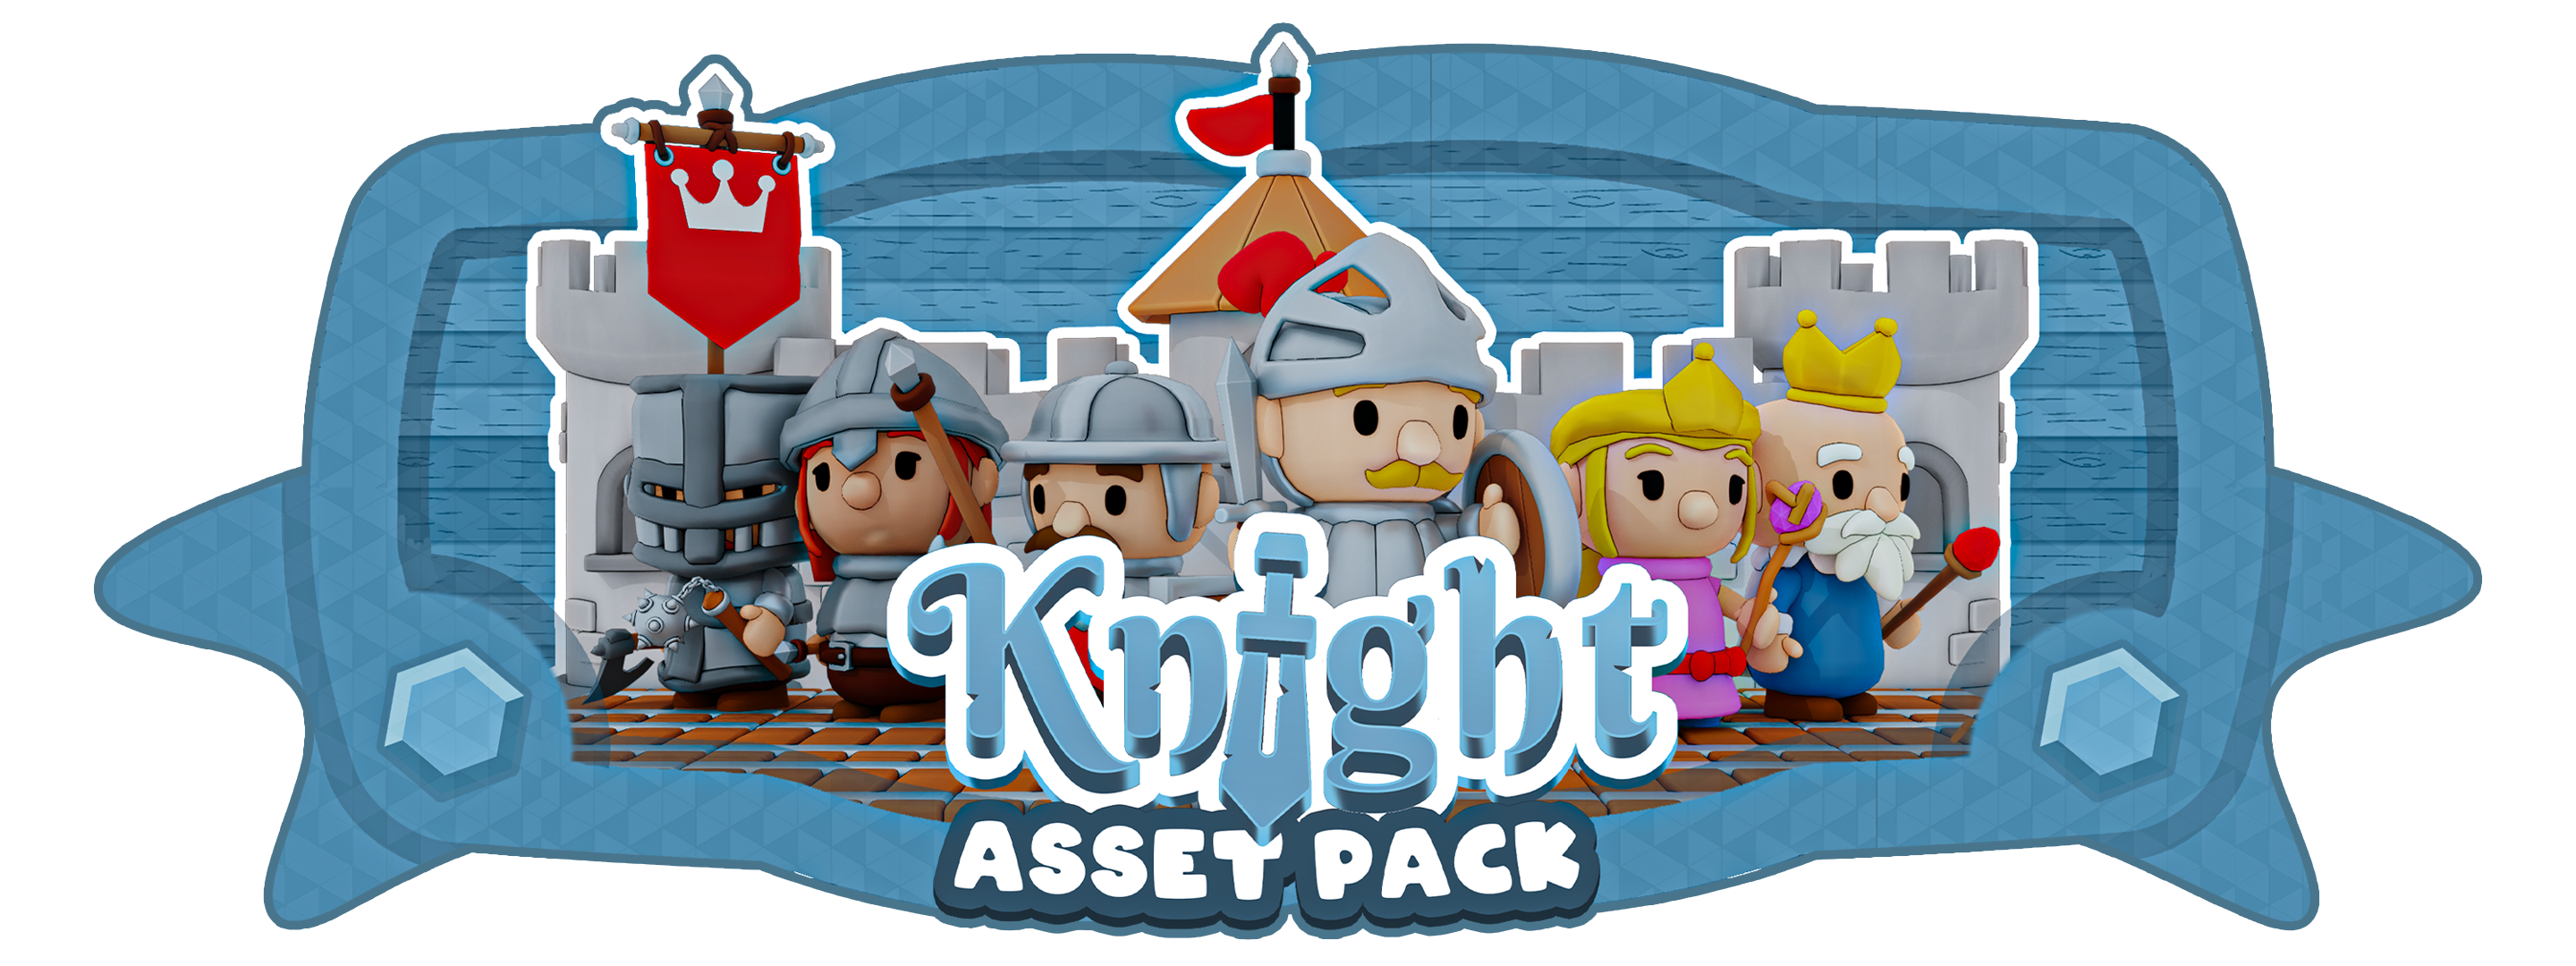 Creatus-Knight-Pack